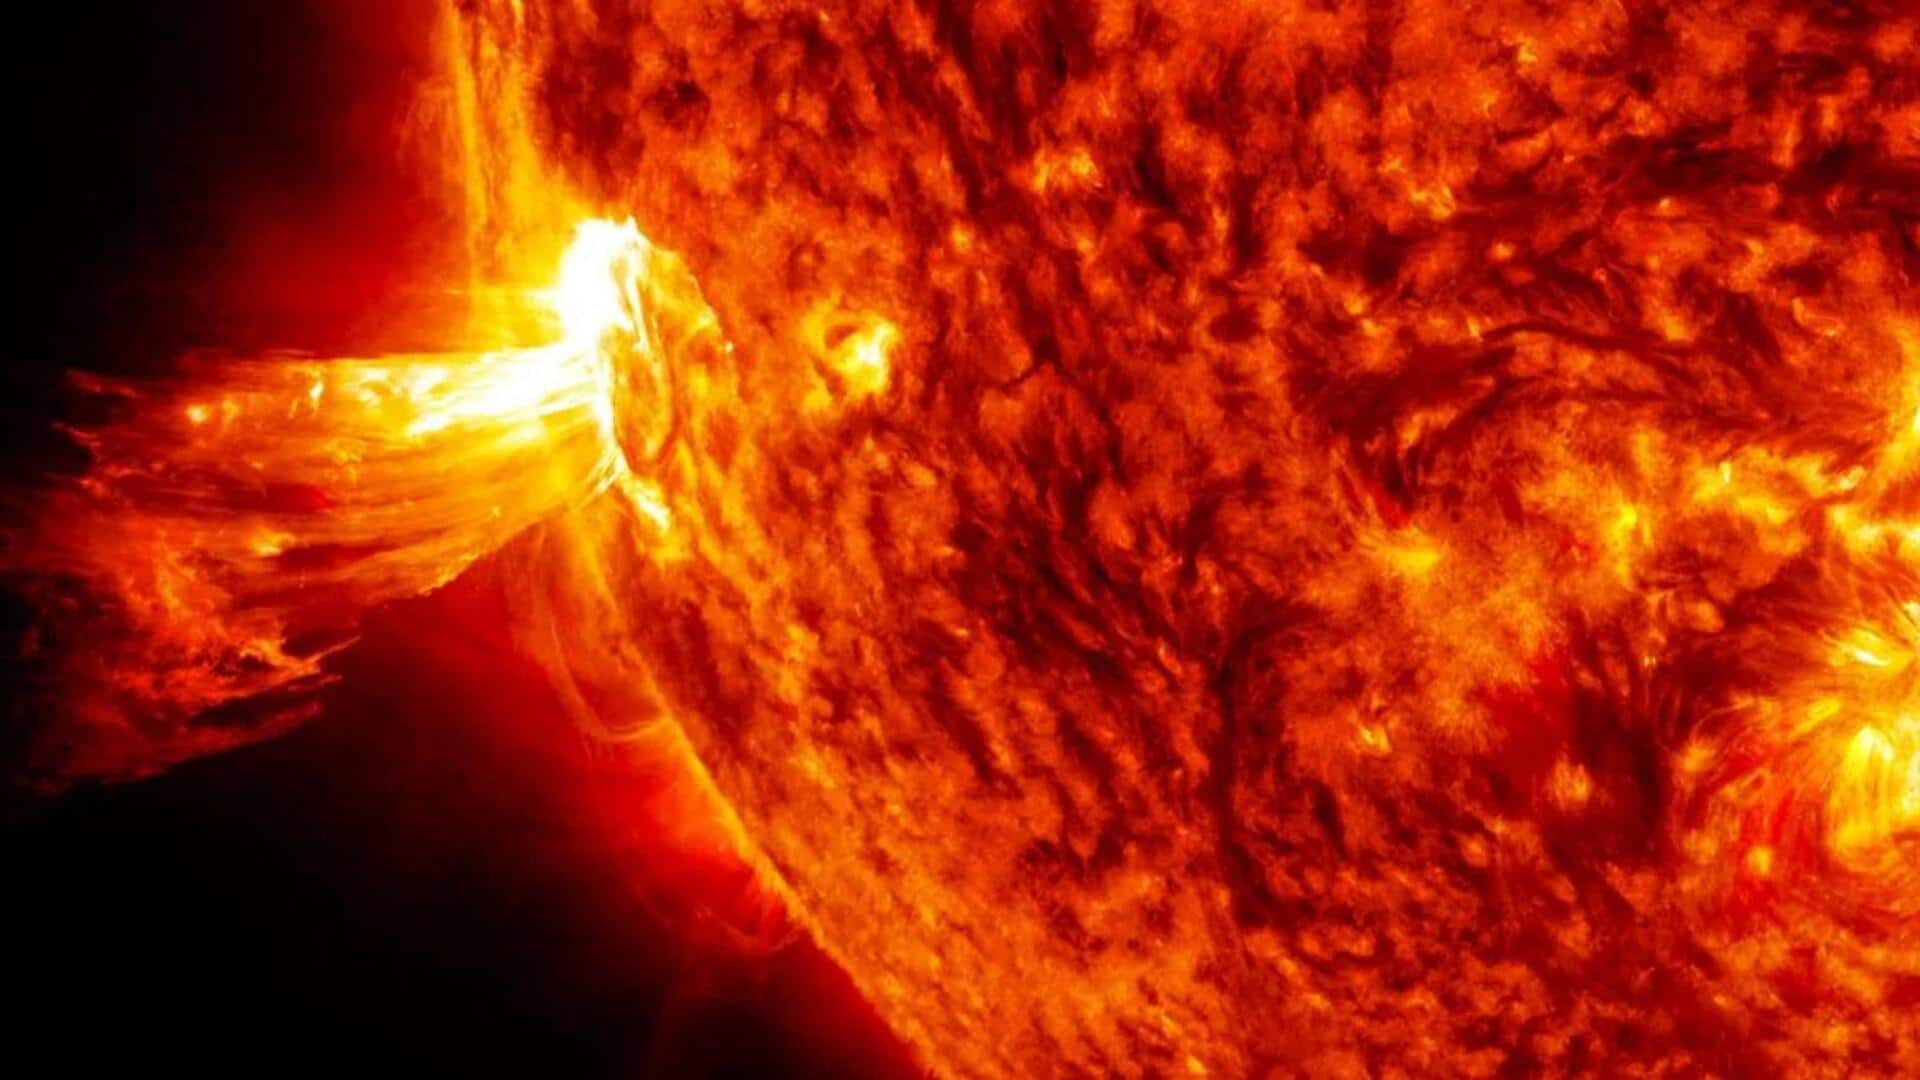 पृथ्वी की तरफ मौजूद सनस्पॉट में विस्फोट की आशंका, सोलर फ्लेयर हो सकता है उत्पन्न 